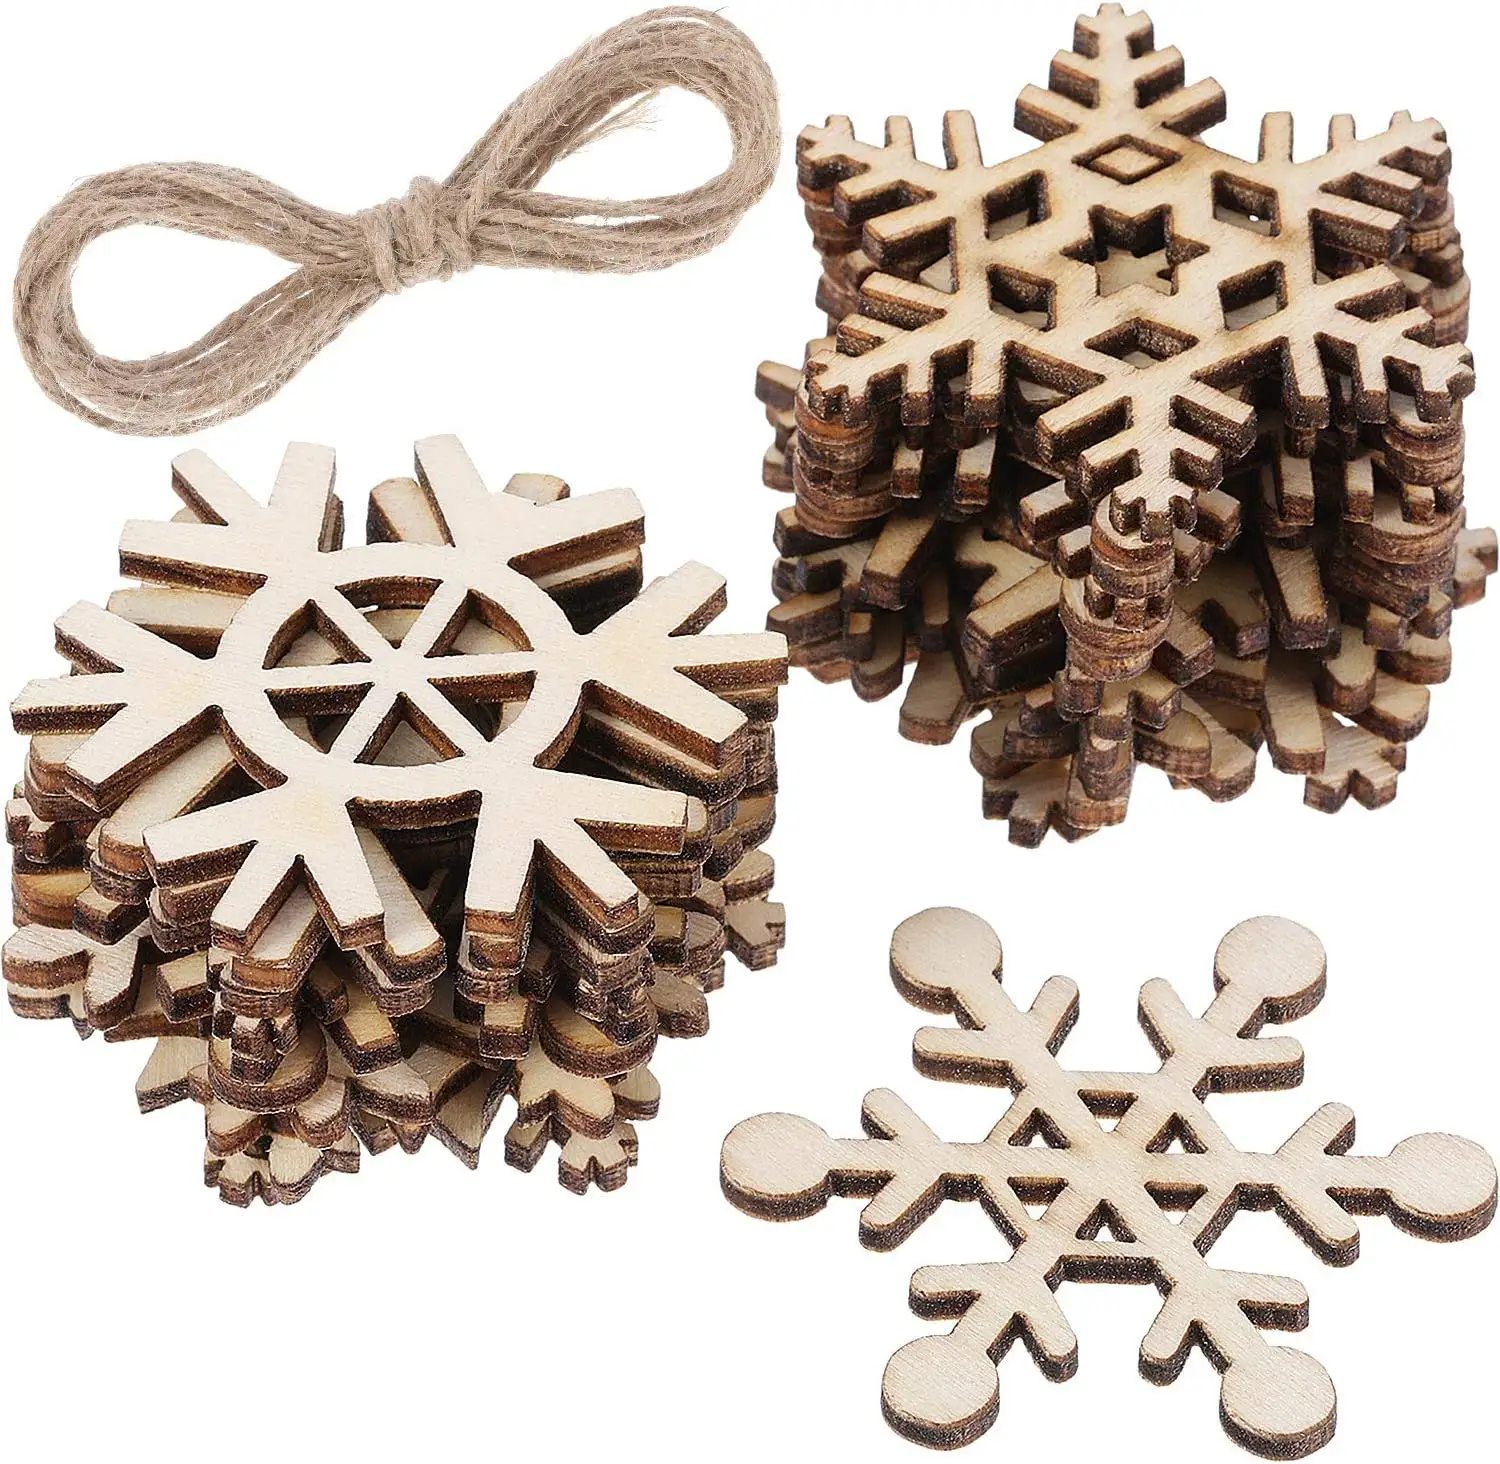 Recortes de copo de nieve sin terminar personalizados, adornos de madera, decoraciones colgantes de madera natural para Navidad